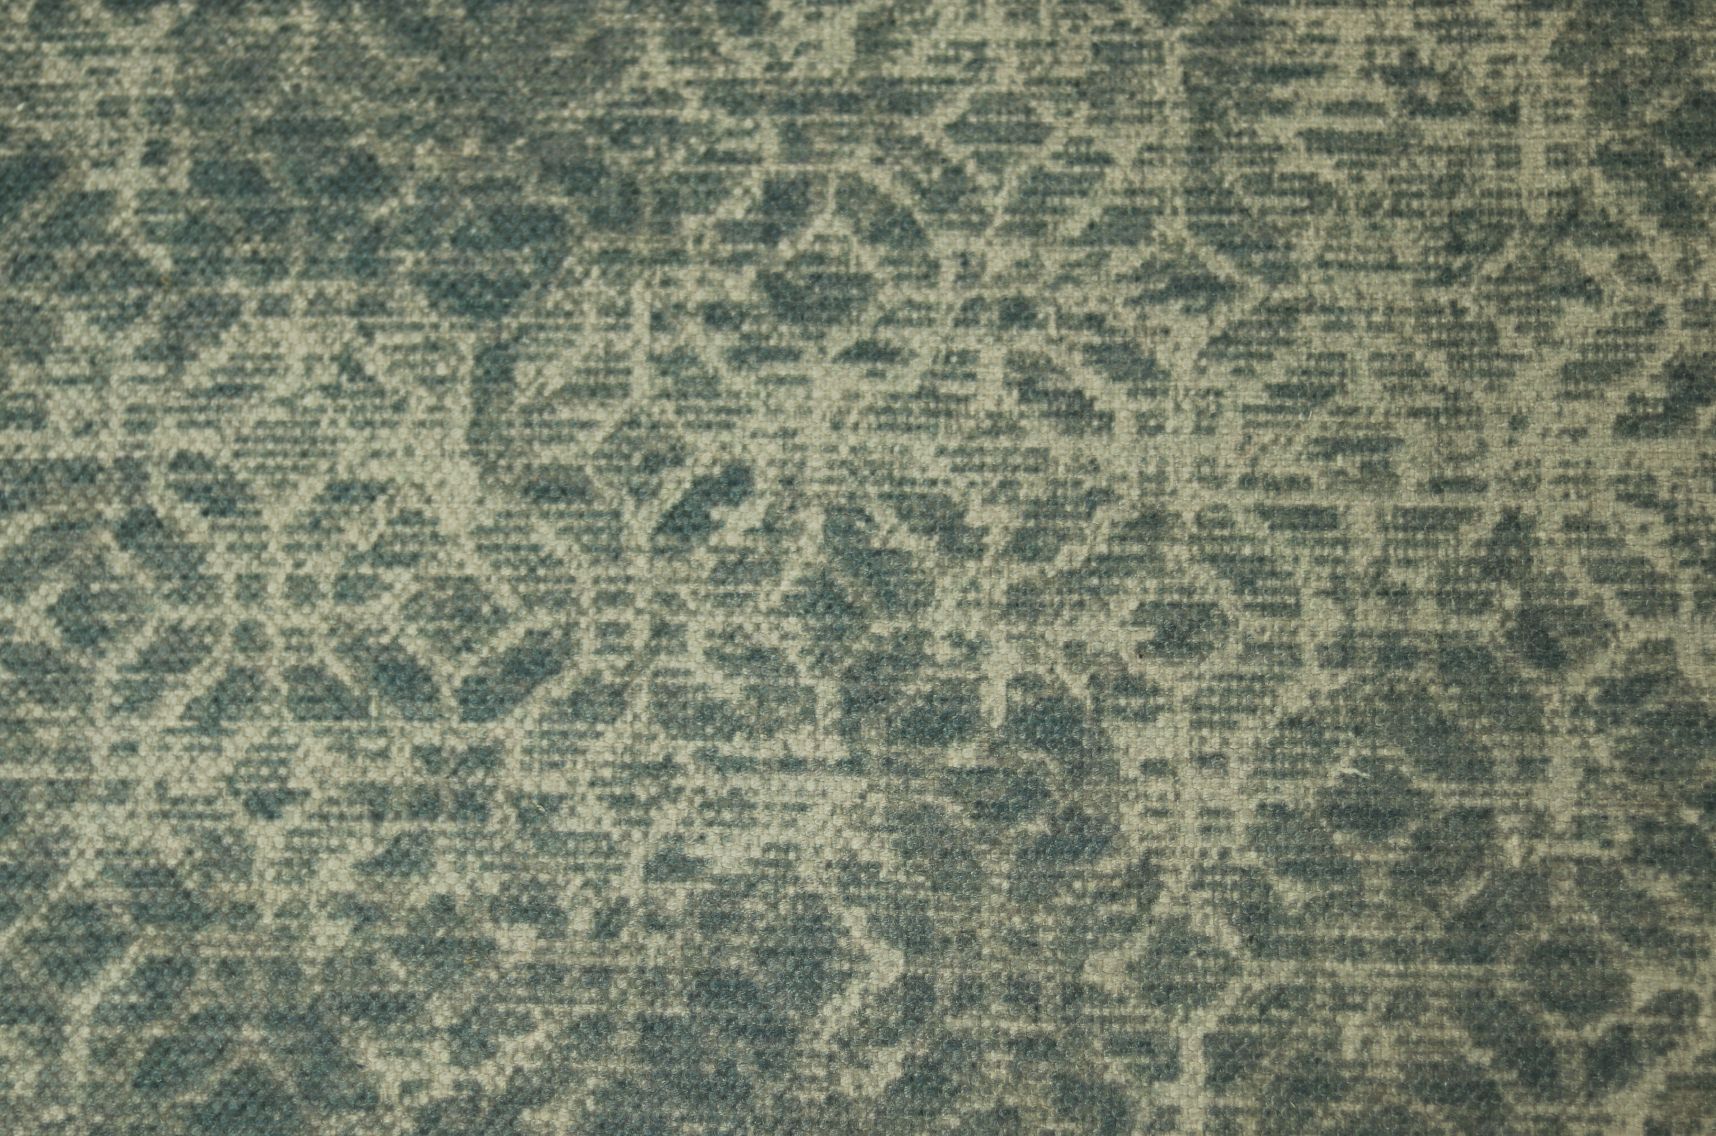 Vloerkleed klassiek - 120x180 - Blauw/roze/grijs/groen - Polyester